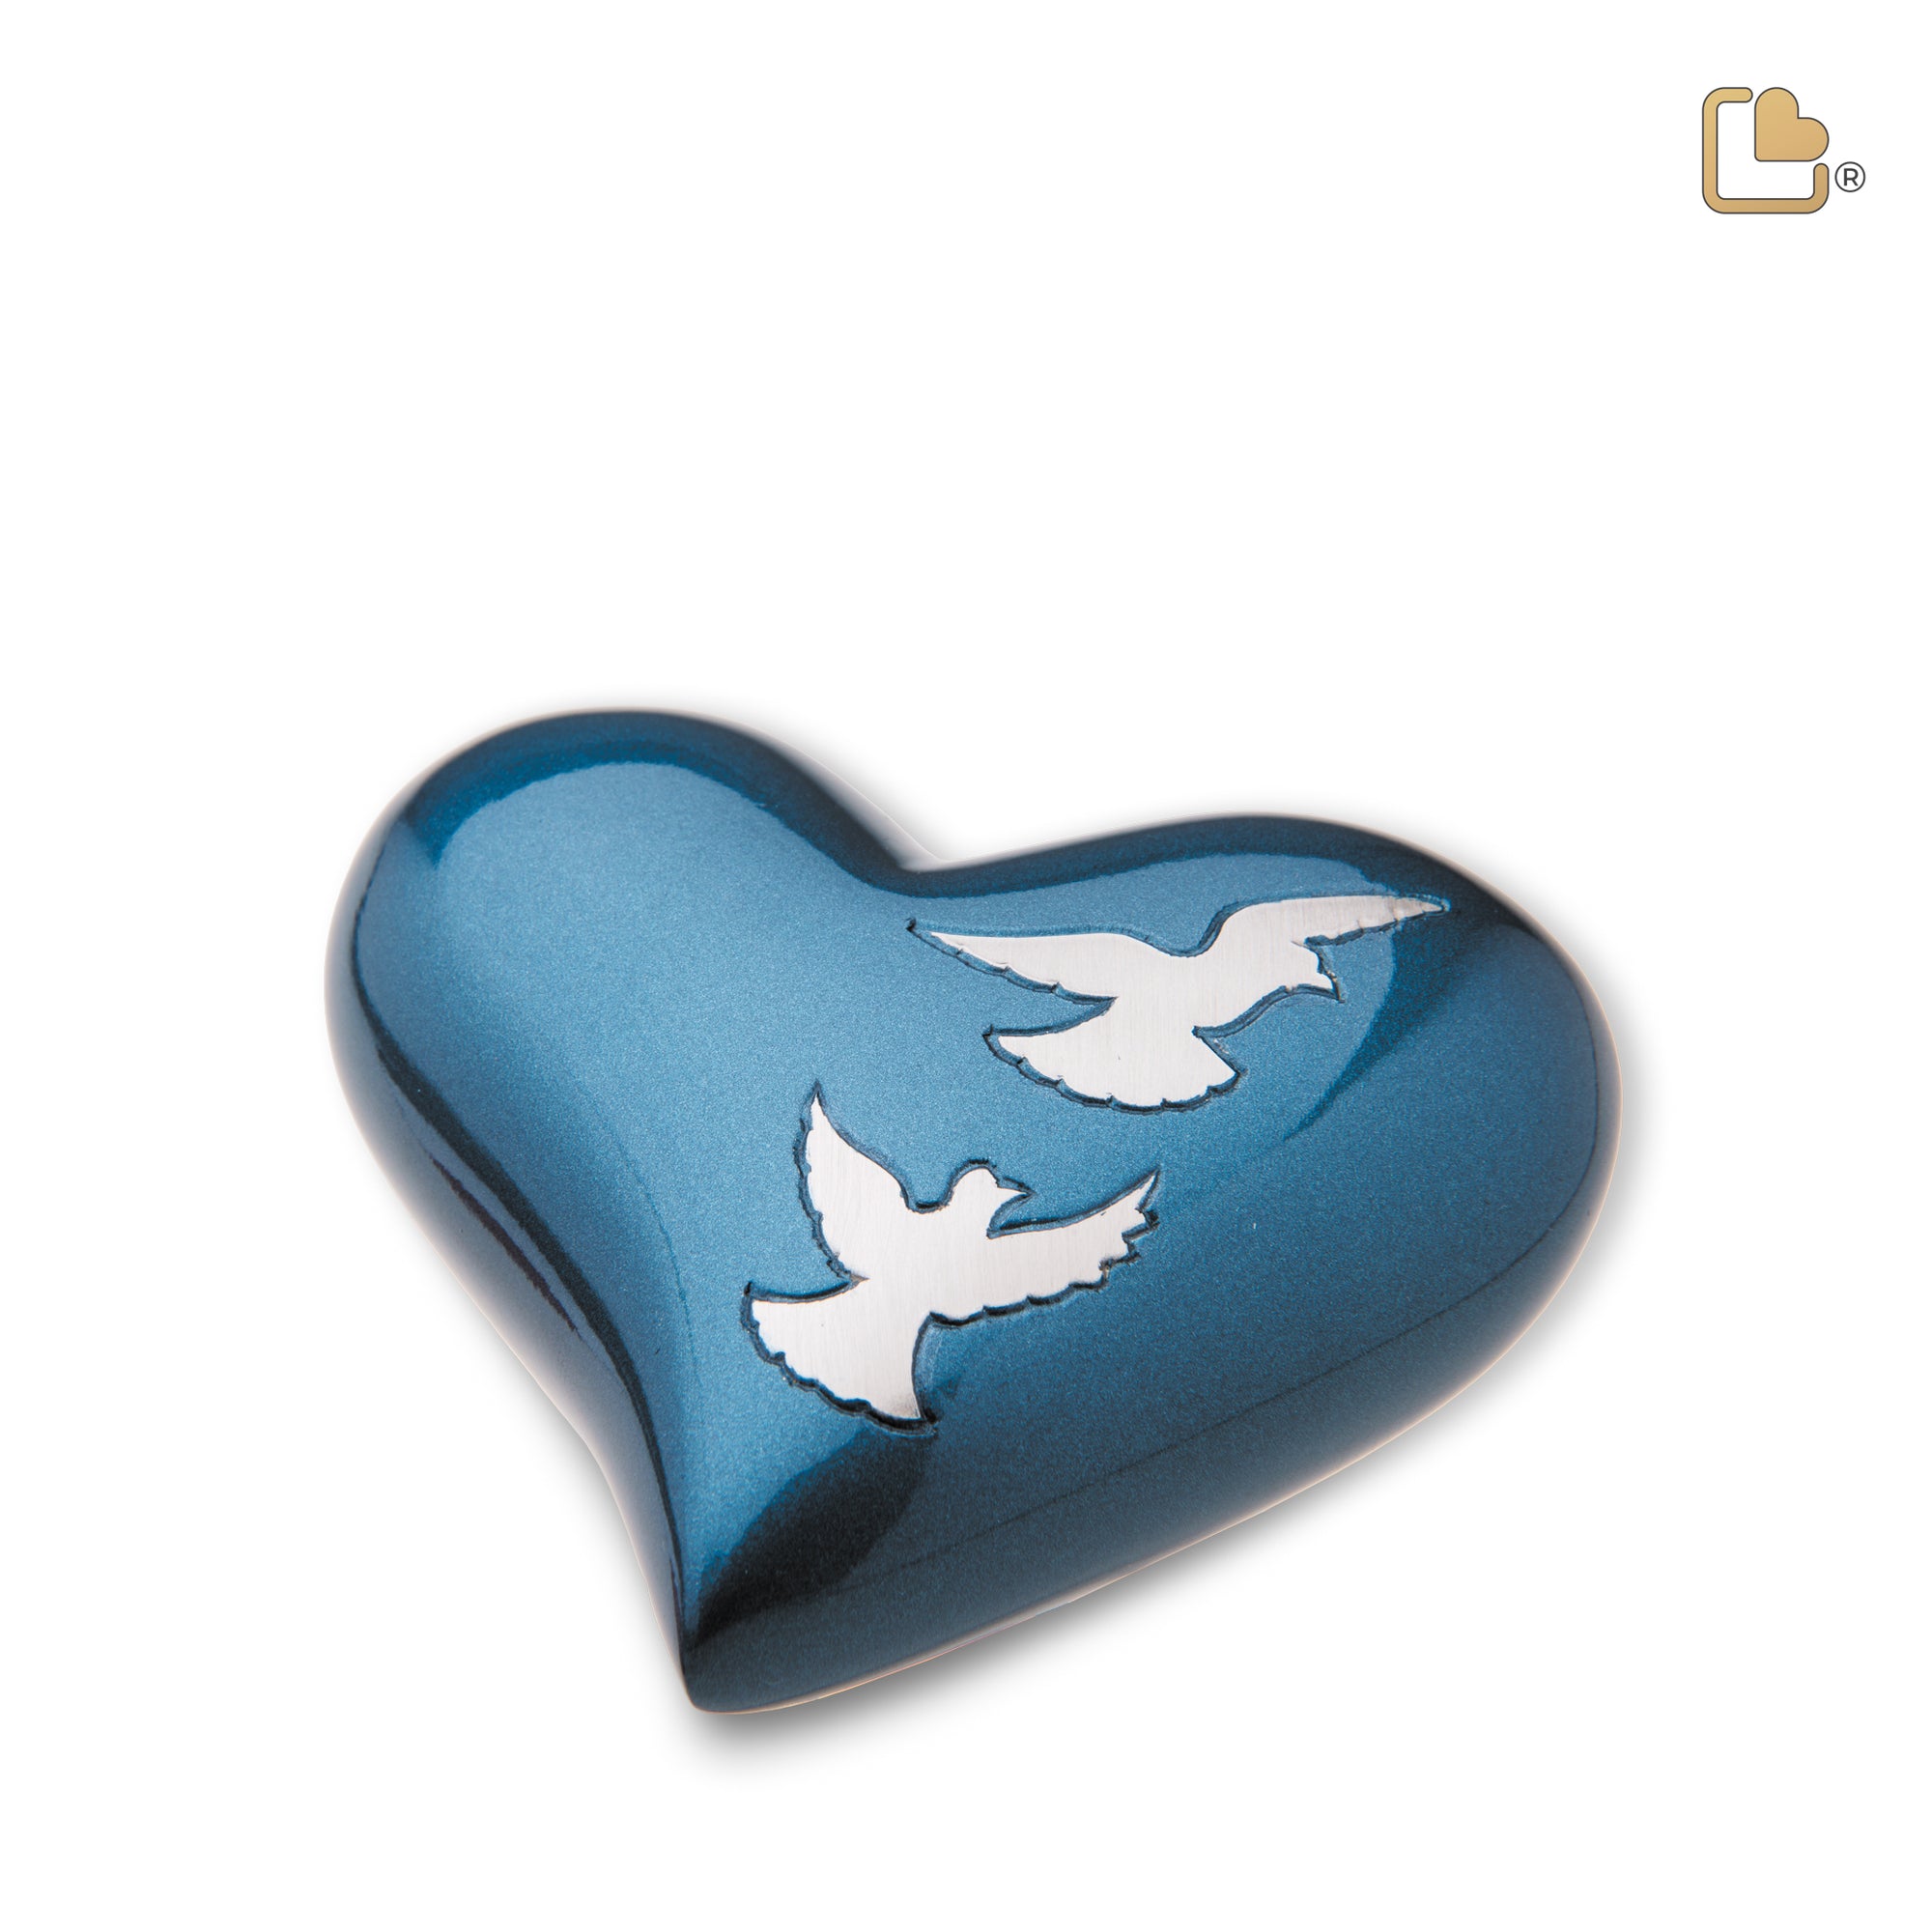 H572   Flying Doves Heart Keepsake Urn Blue & Bru Pewter